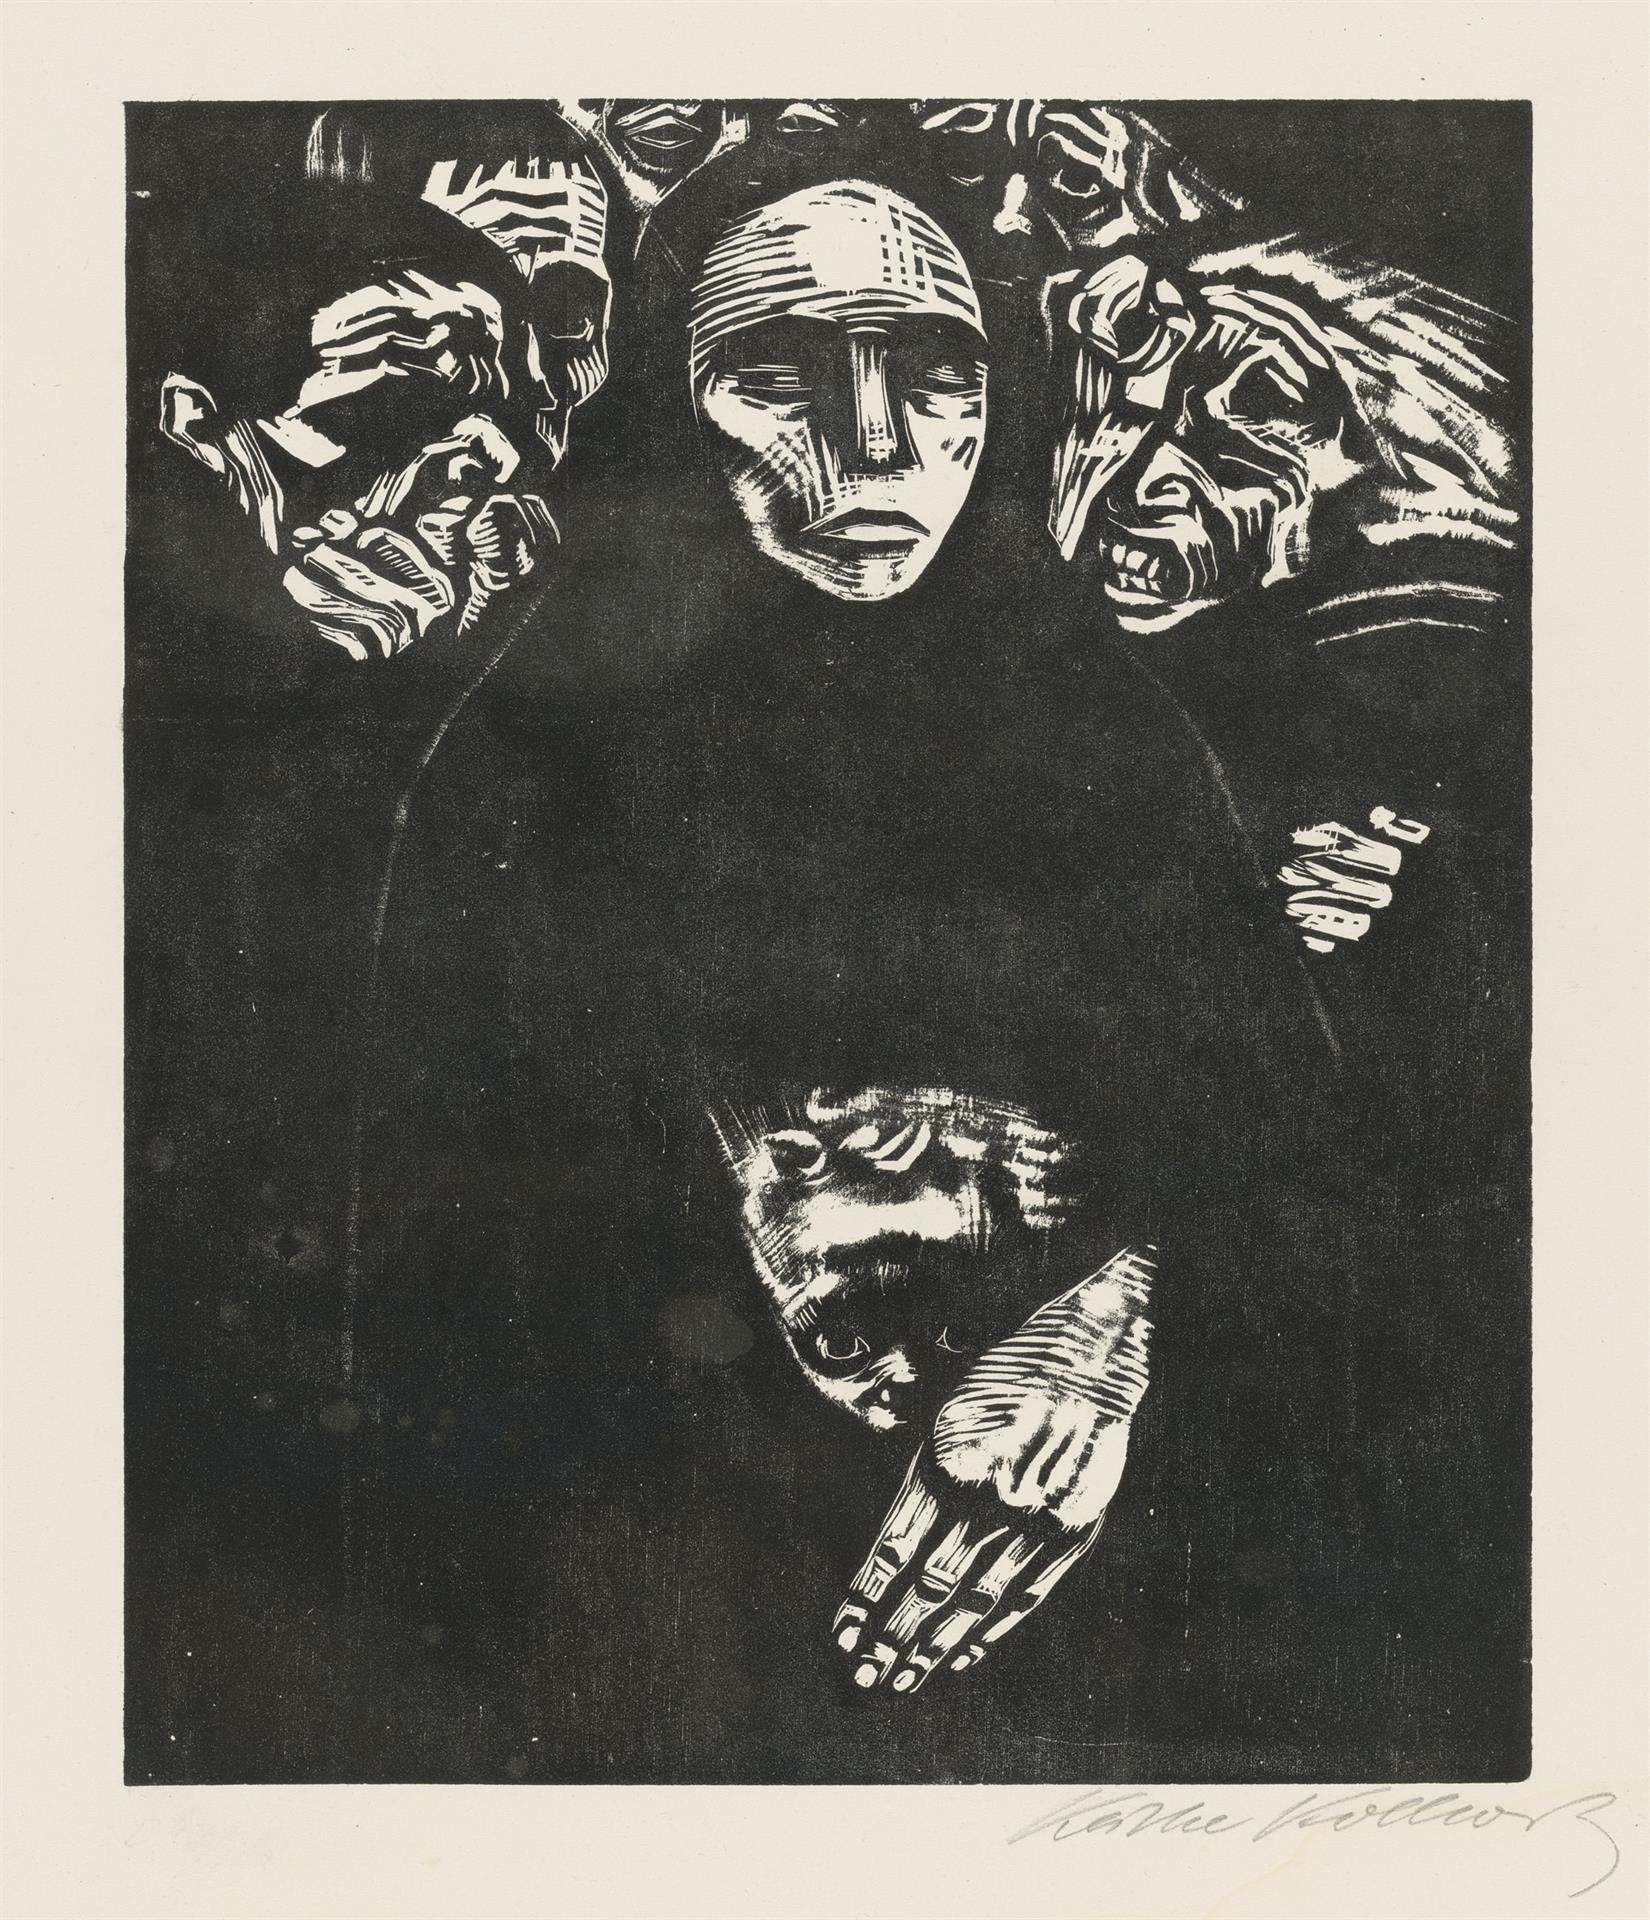 Käthe Kollwitz, The People, sheet 7 of the series »War«, 1922, woodcut, Kn 190 VII c, Cologne Kollwitz Collection © Käthe Kollwitz Museum Köln